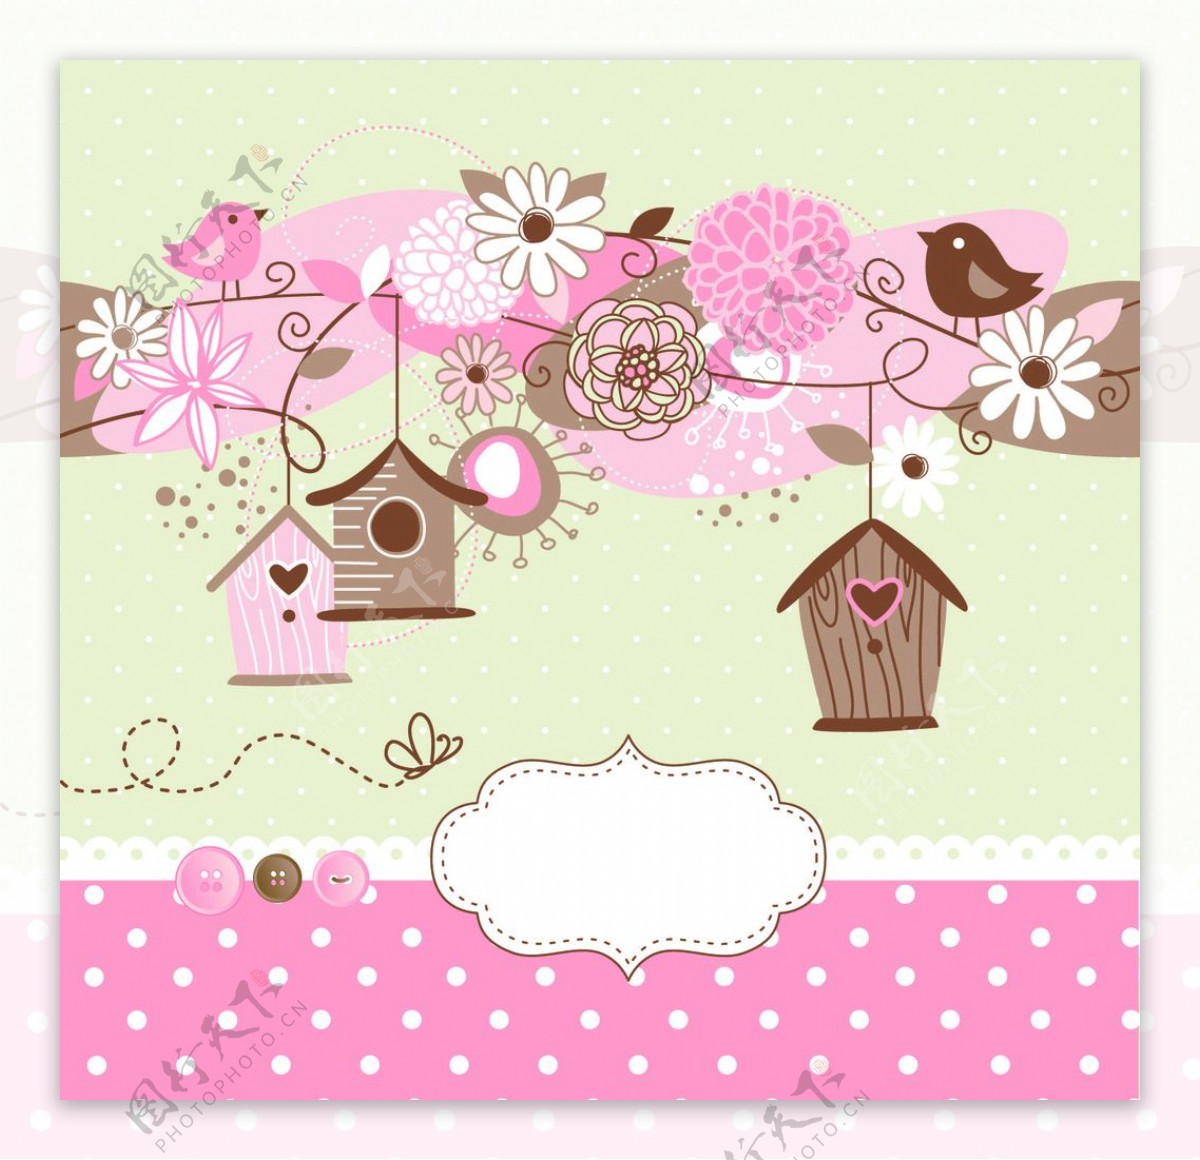 可爱卡通粉色房屋背景素材